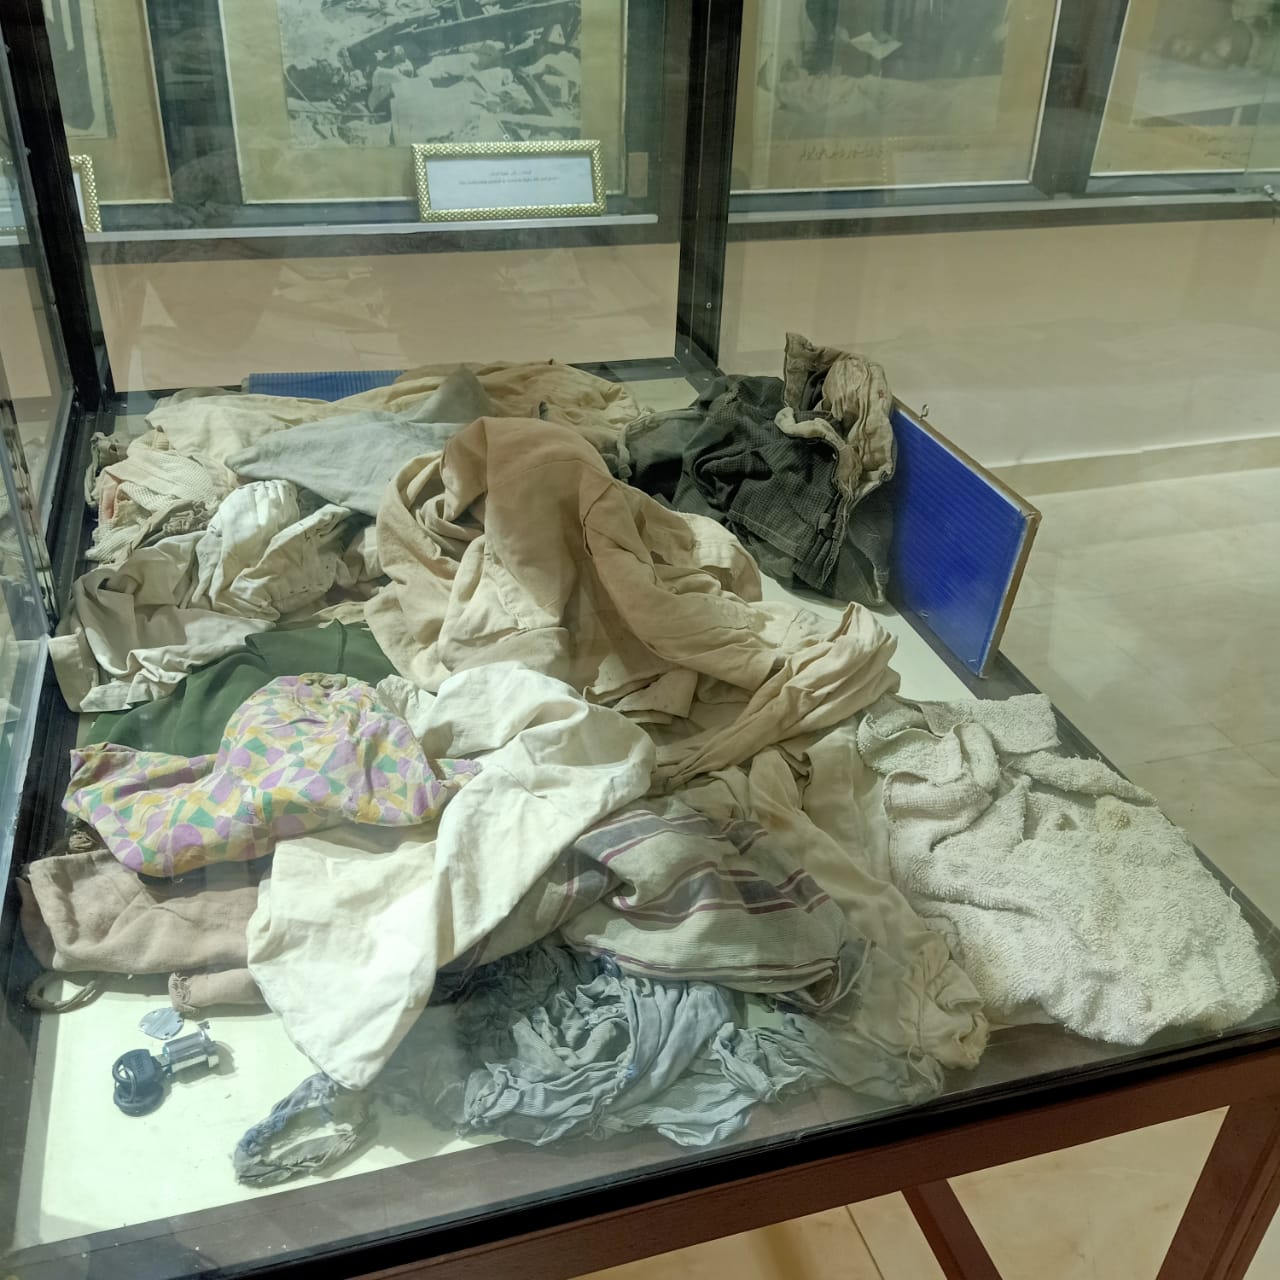  كتب وكراسات وملابس شهداء مذبحة بحر البقر بمتحف المدرسة (4)